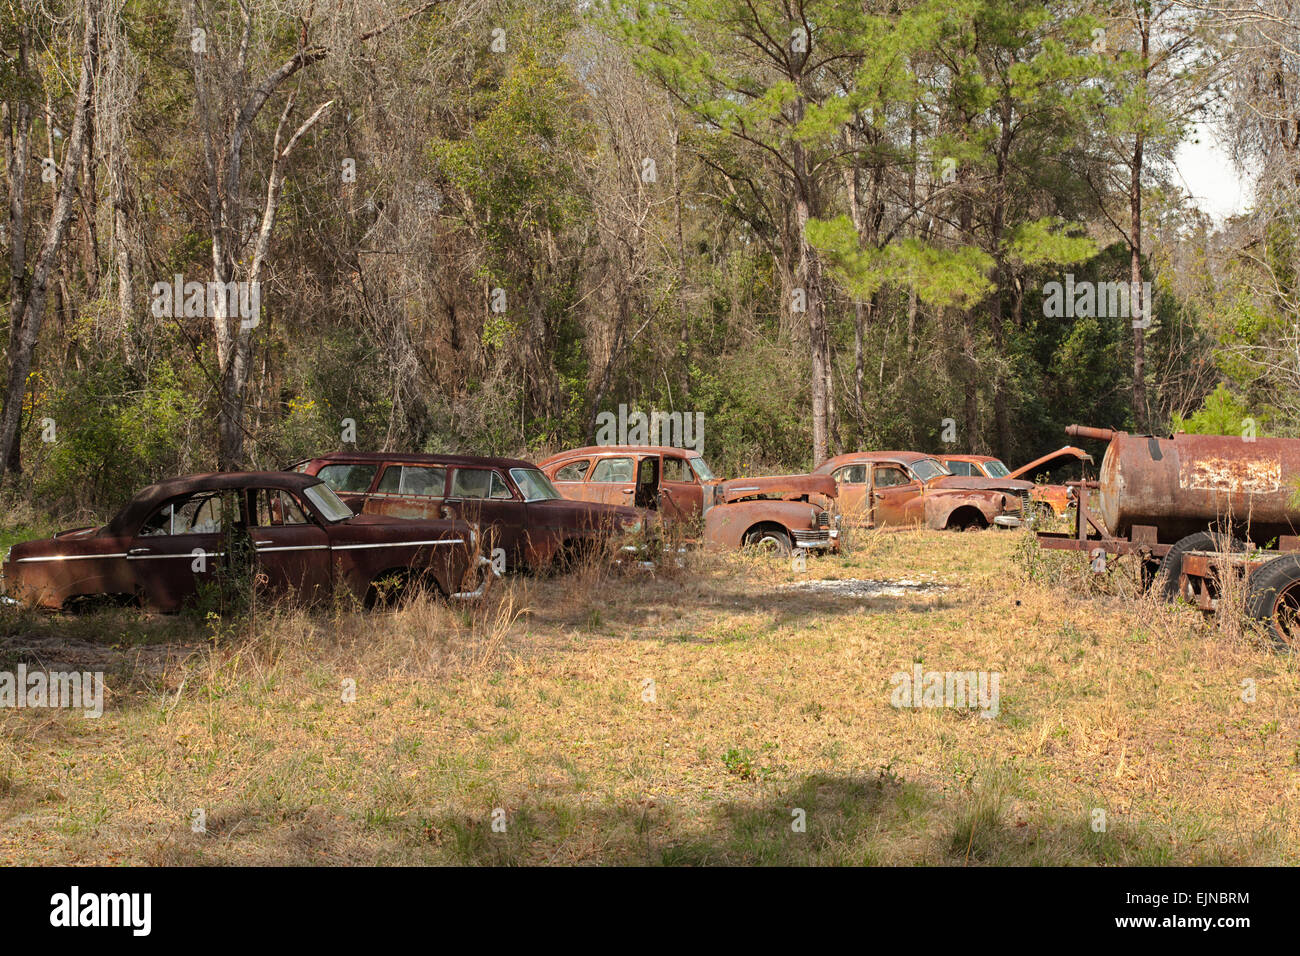 Cimitero di auto in Florida. Alcune vecchie, defunta e rusty automobili sono state accuratamente accantonato per decadimento con onore. Foto Stock